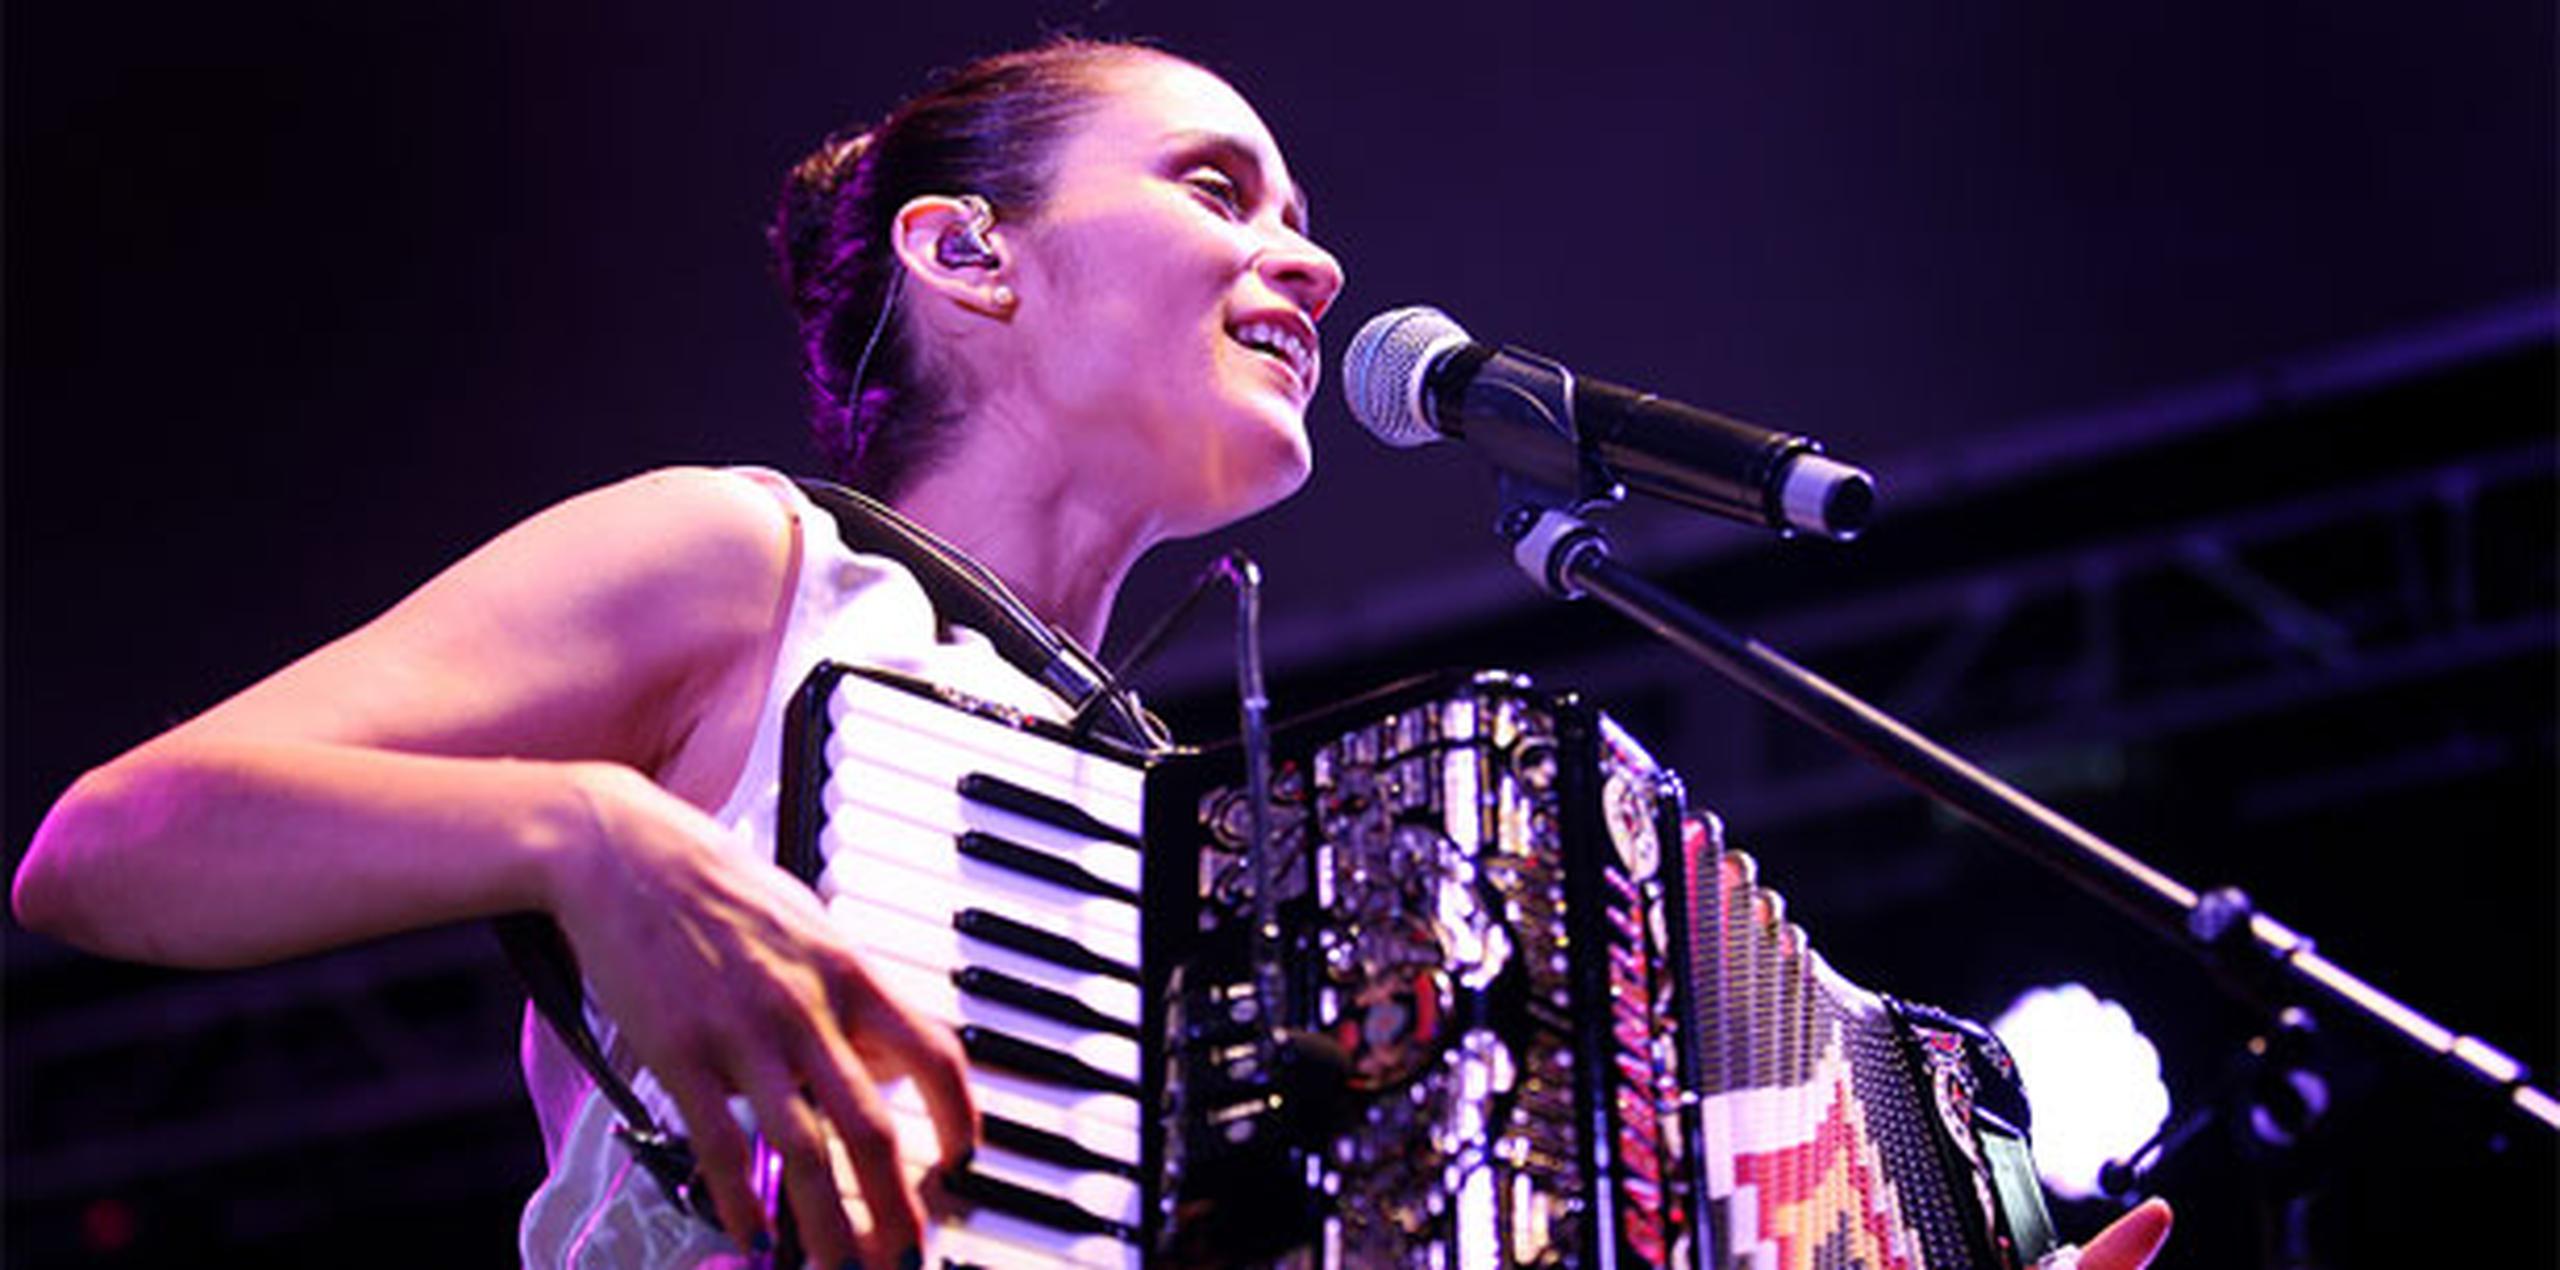 La cantautora mexicana Julieta Venegas hace un homenaje a la vida en su nuevo álbum “Algo sucede”. (Archivo)